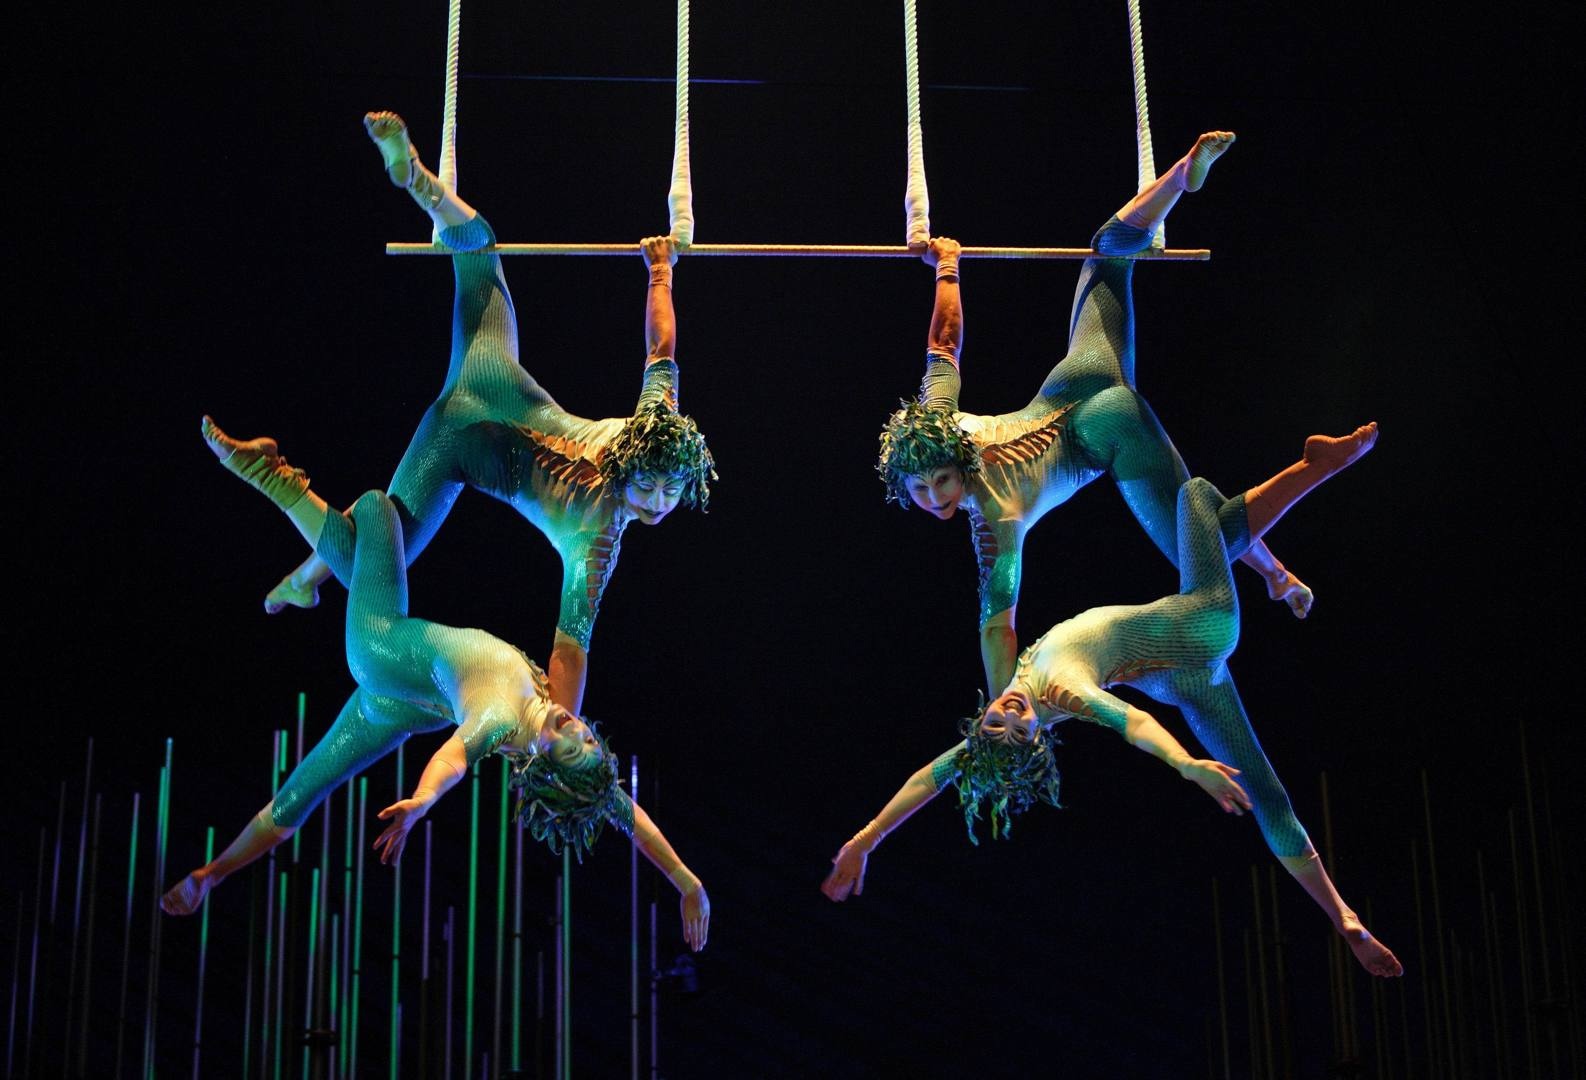 Four Person Trapeze Act Cirque Du Soleil Photo 39439736 Fanpop.